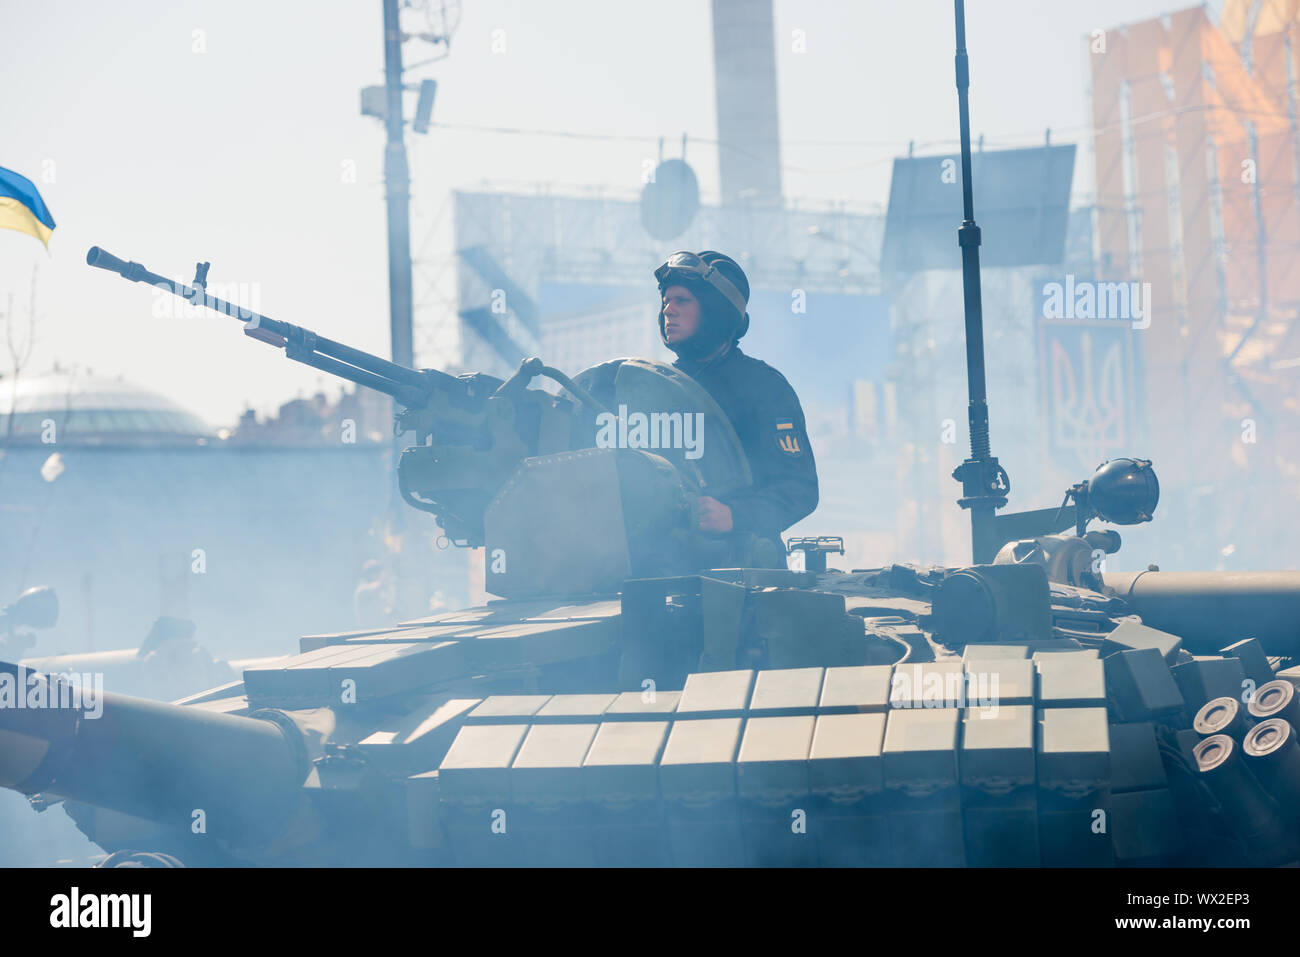 Tanks on military parade in Kiev, Ukraine Stock Photo